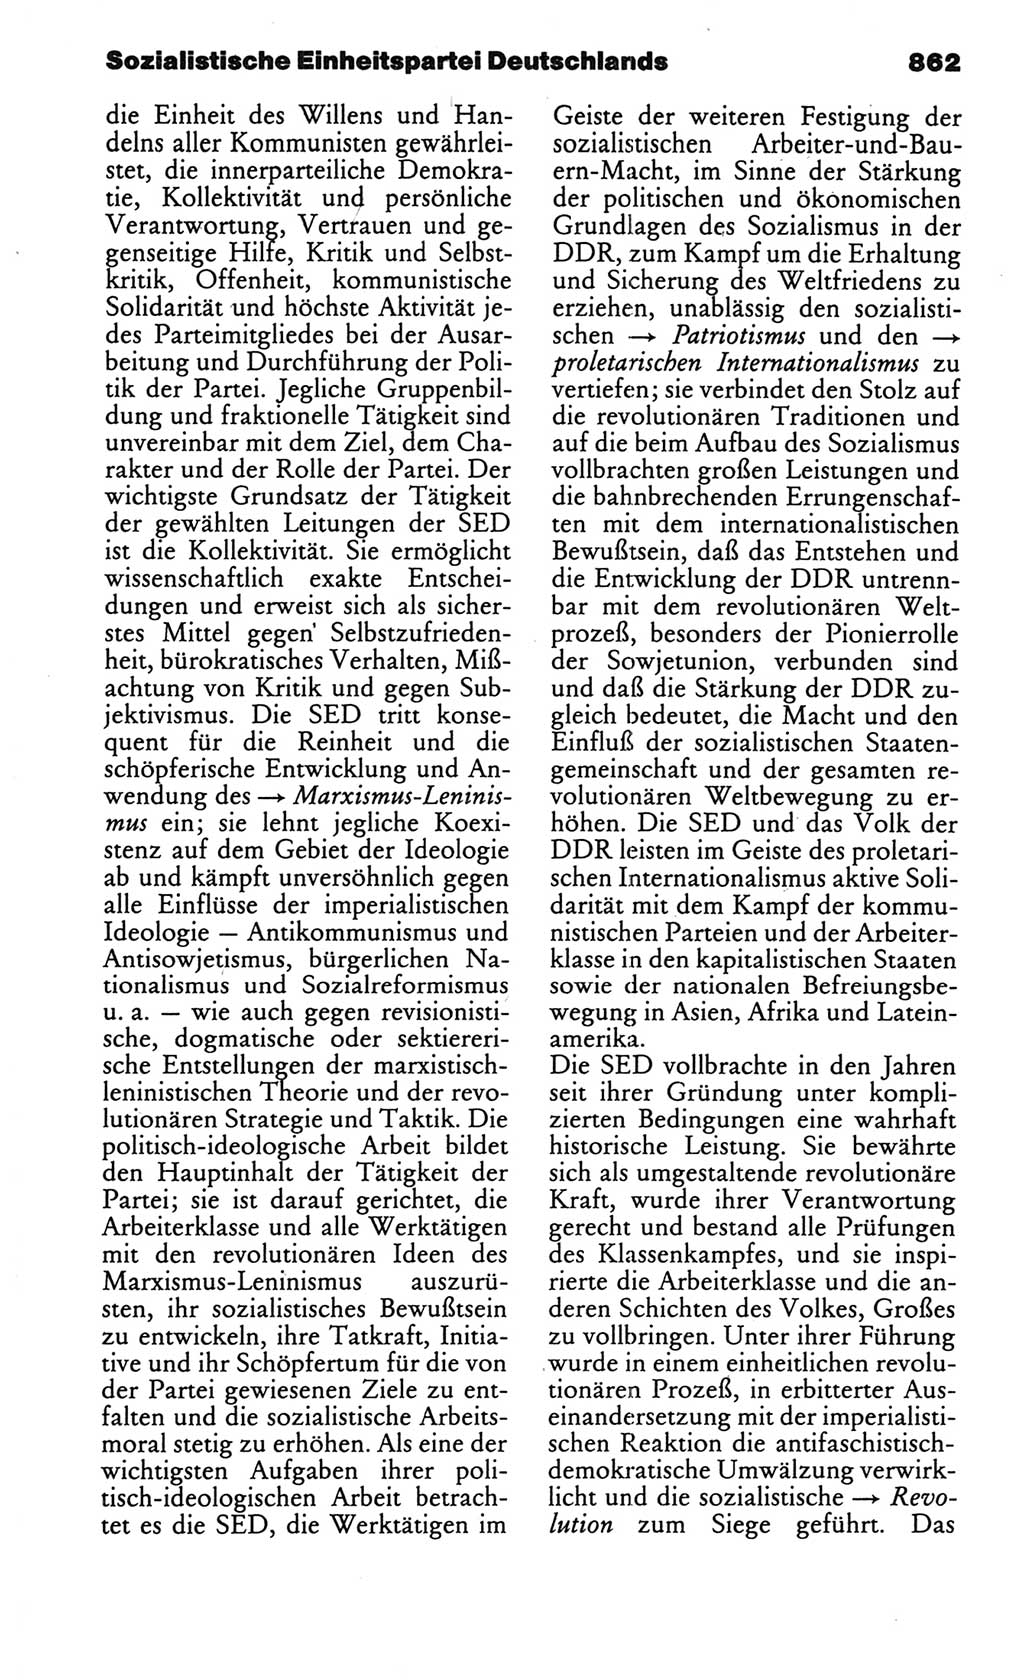 Kleines politisches Wörterbuch [Deutsche Demokratische Republik (DDR)] 1986, Seite 862 (Kl. pol. Wb. DDR 1986, S. 862)